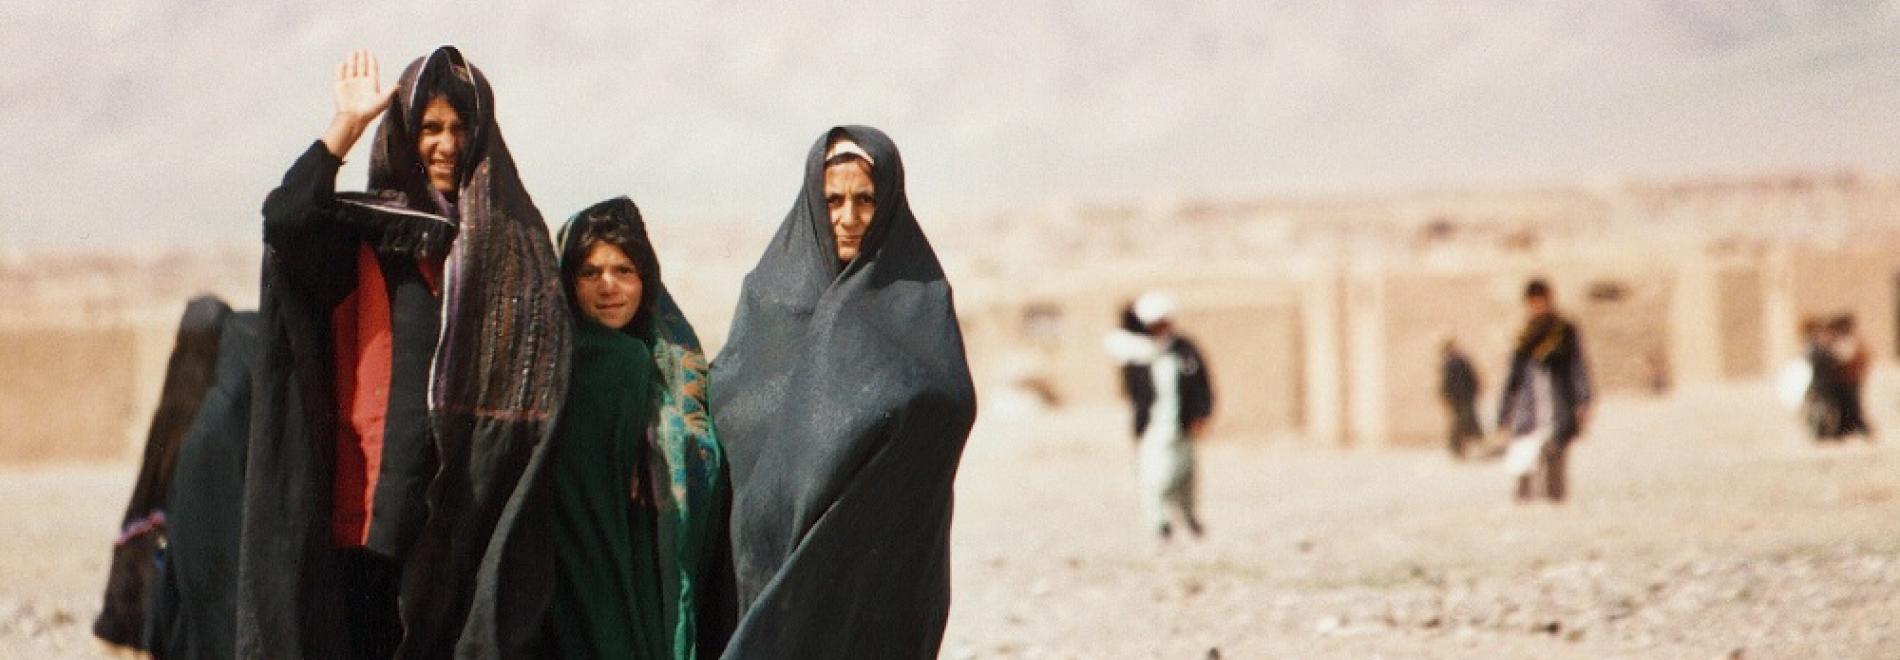 Medizinische Hilfe für Frauen in Afghanistan. Foto: Matthieu Alexandre